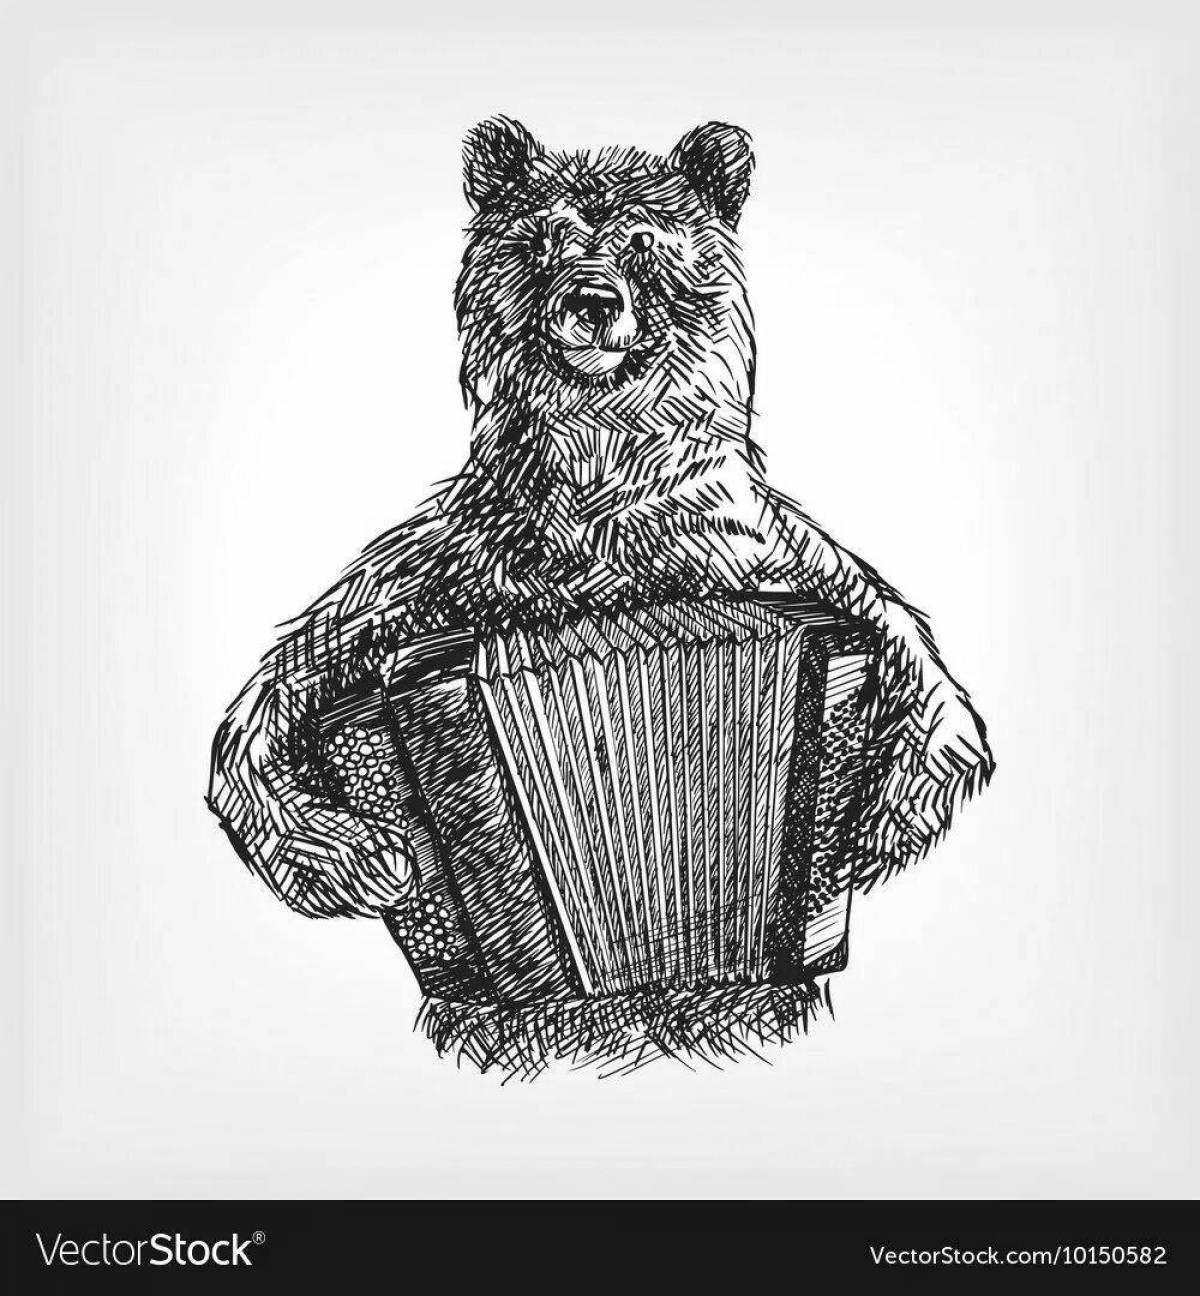 Russian symbol bear #2